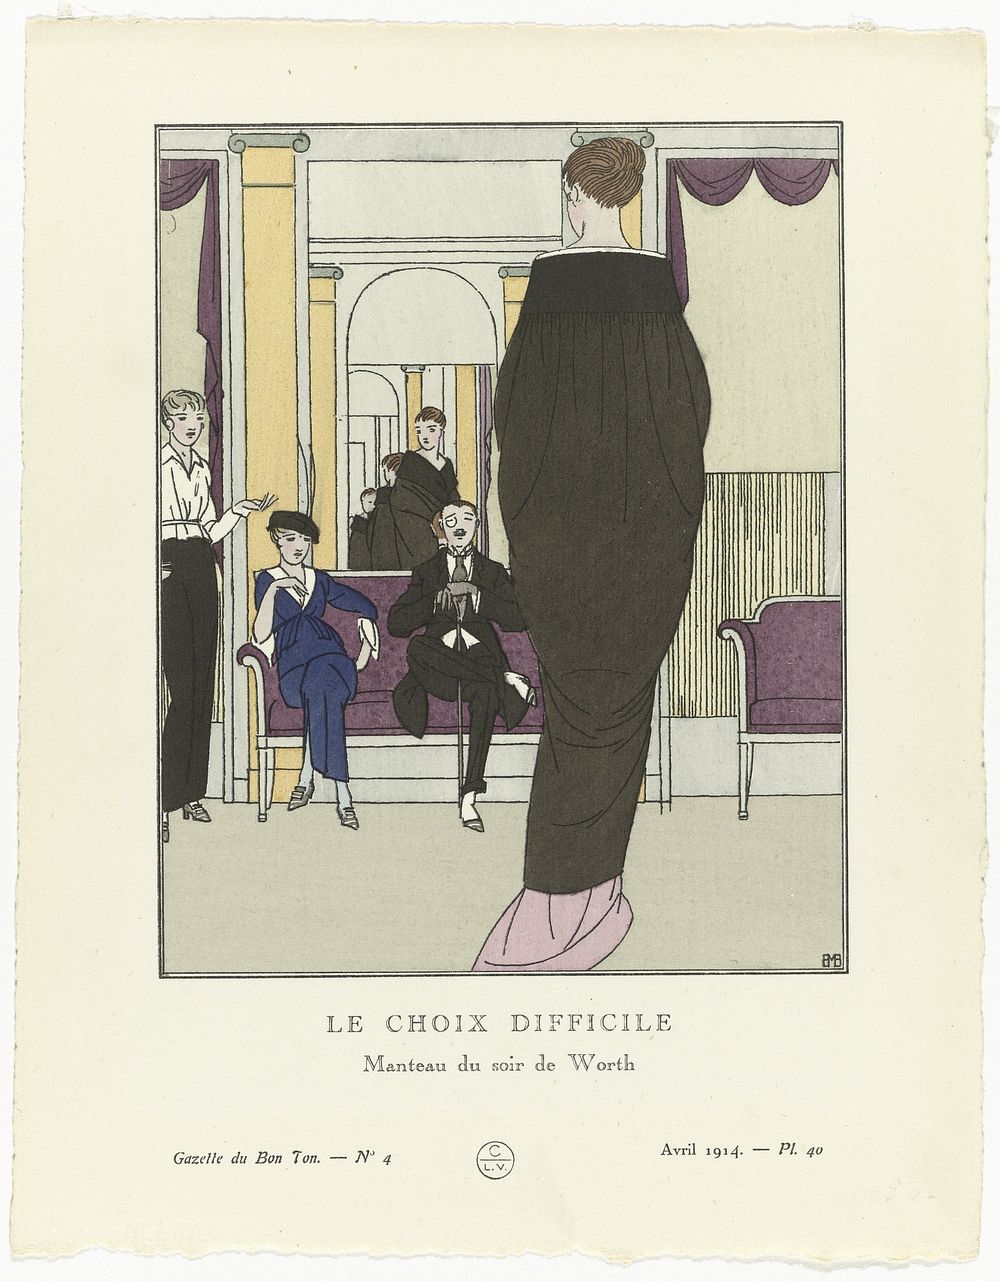 Gazette du Bon Ton, 1914 , No. 4, Pl. 40: Le choix difficile / Manteau du soir de Worth (1914) by Bernard Boutet de Monvel…